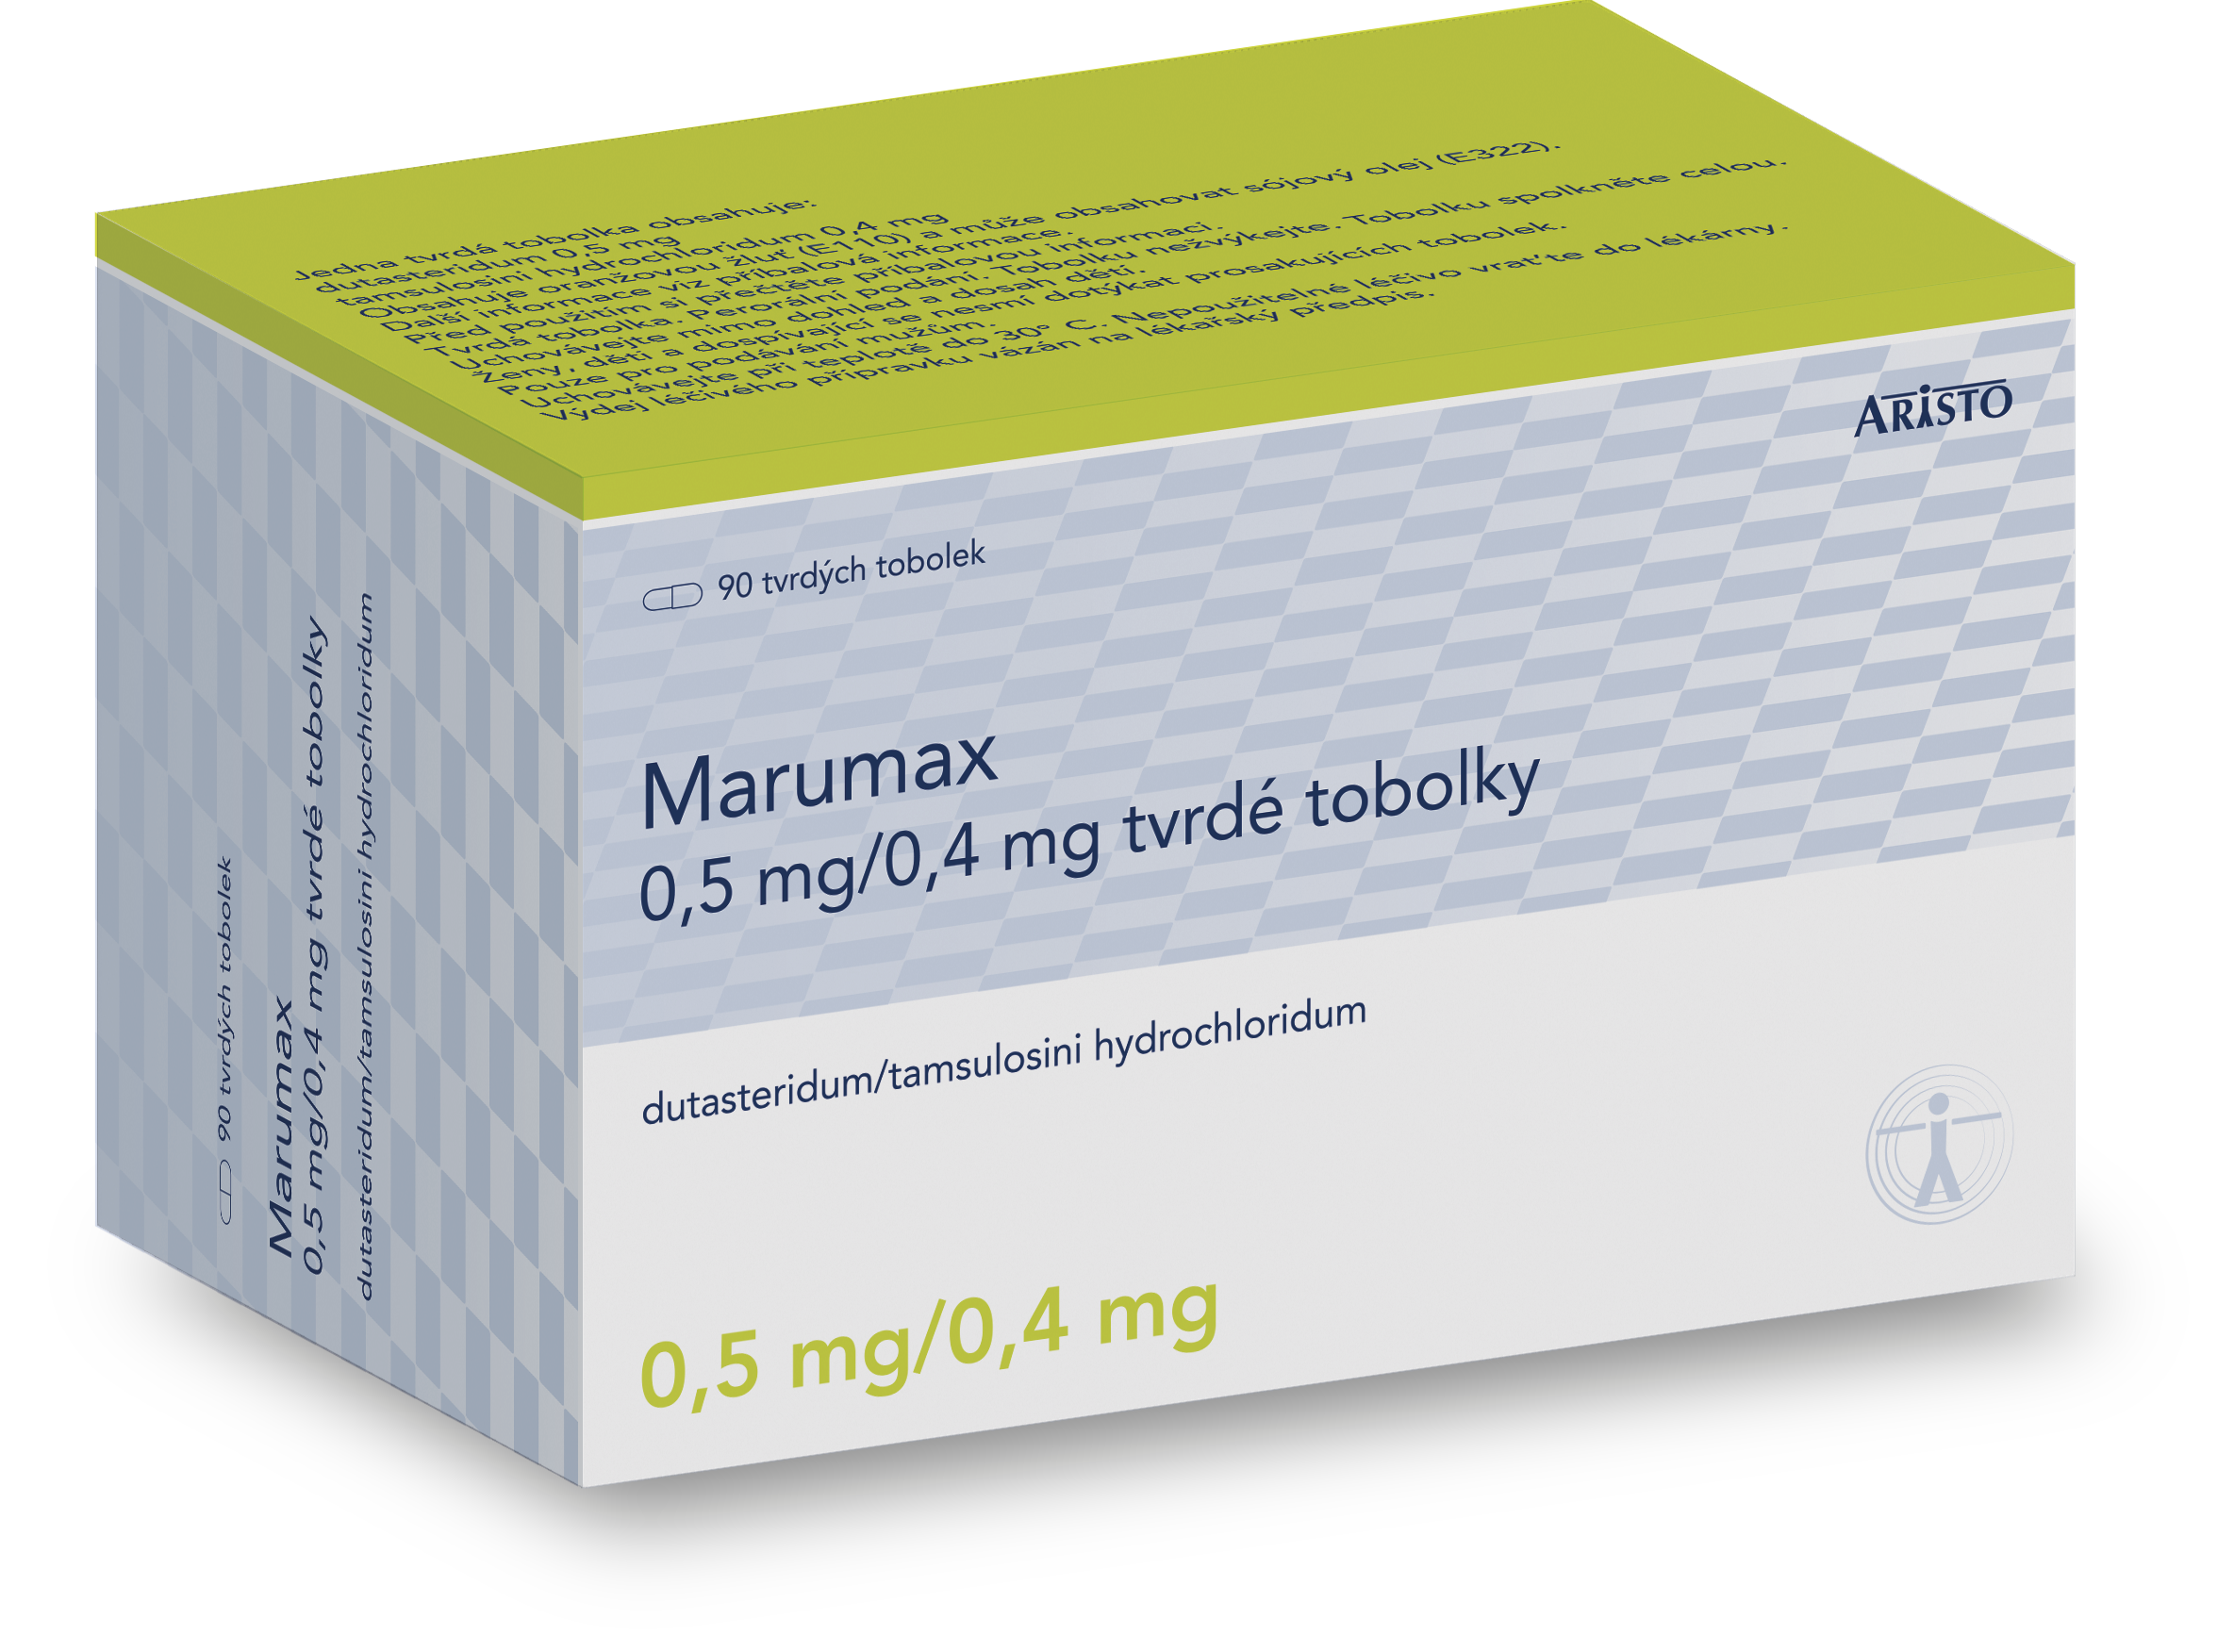 Marumax 0,5 mg/0,4 mg